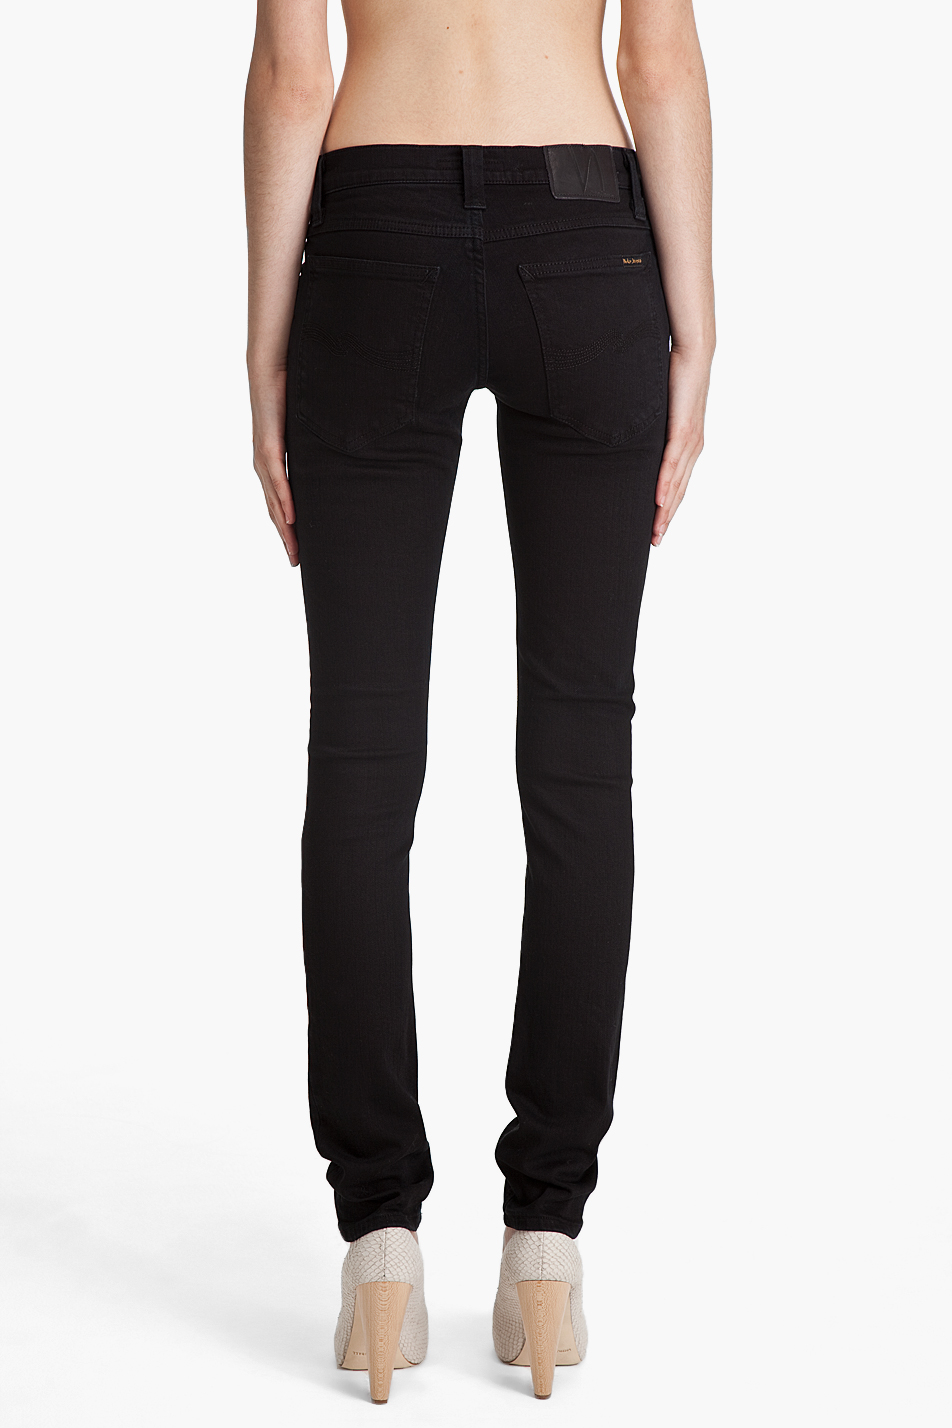 Lyst - Nudie jeans Tight Long John Black Jeans in Black